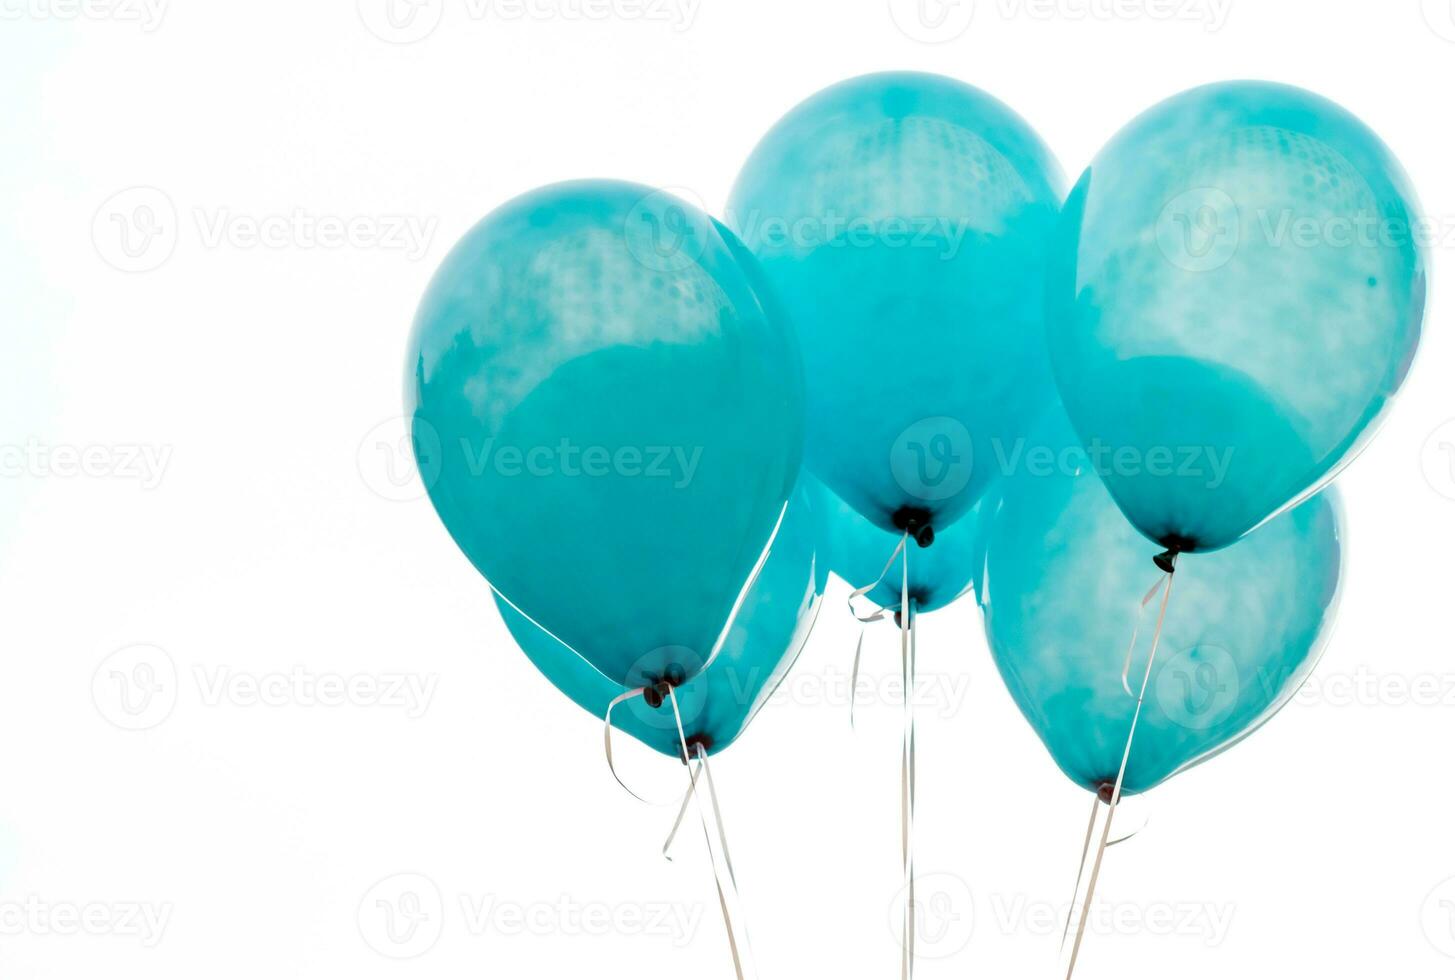 textura na superfície do balão azul foto